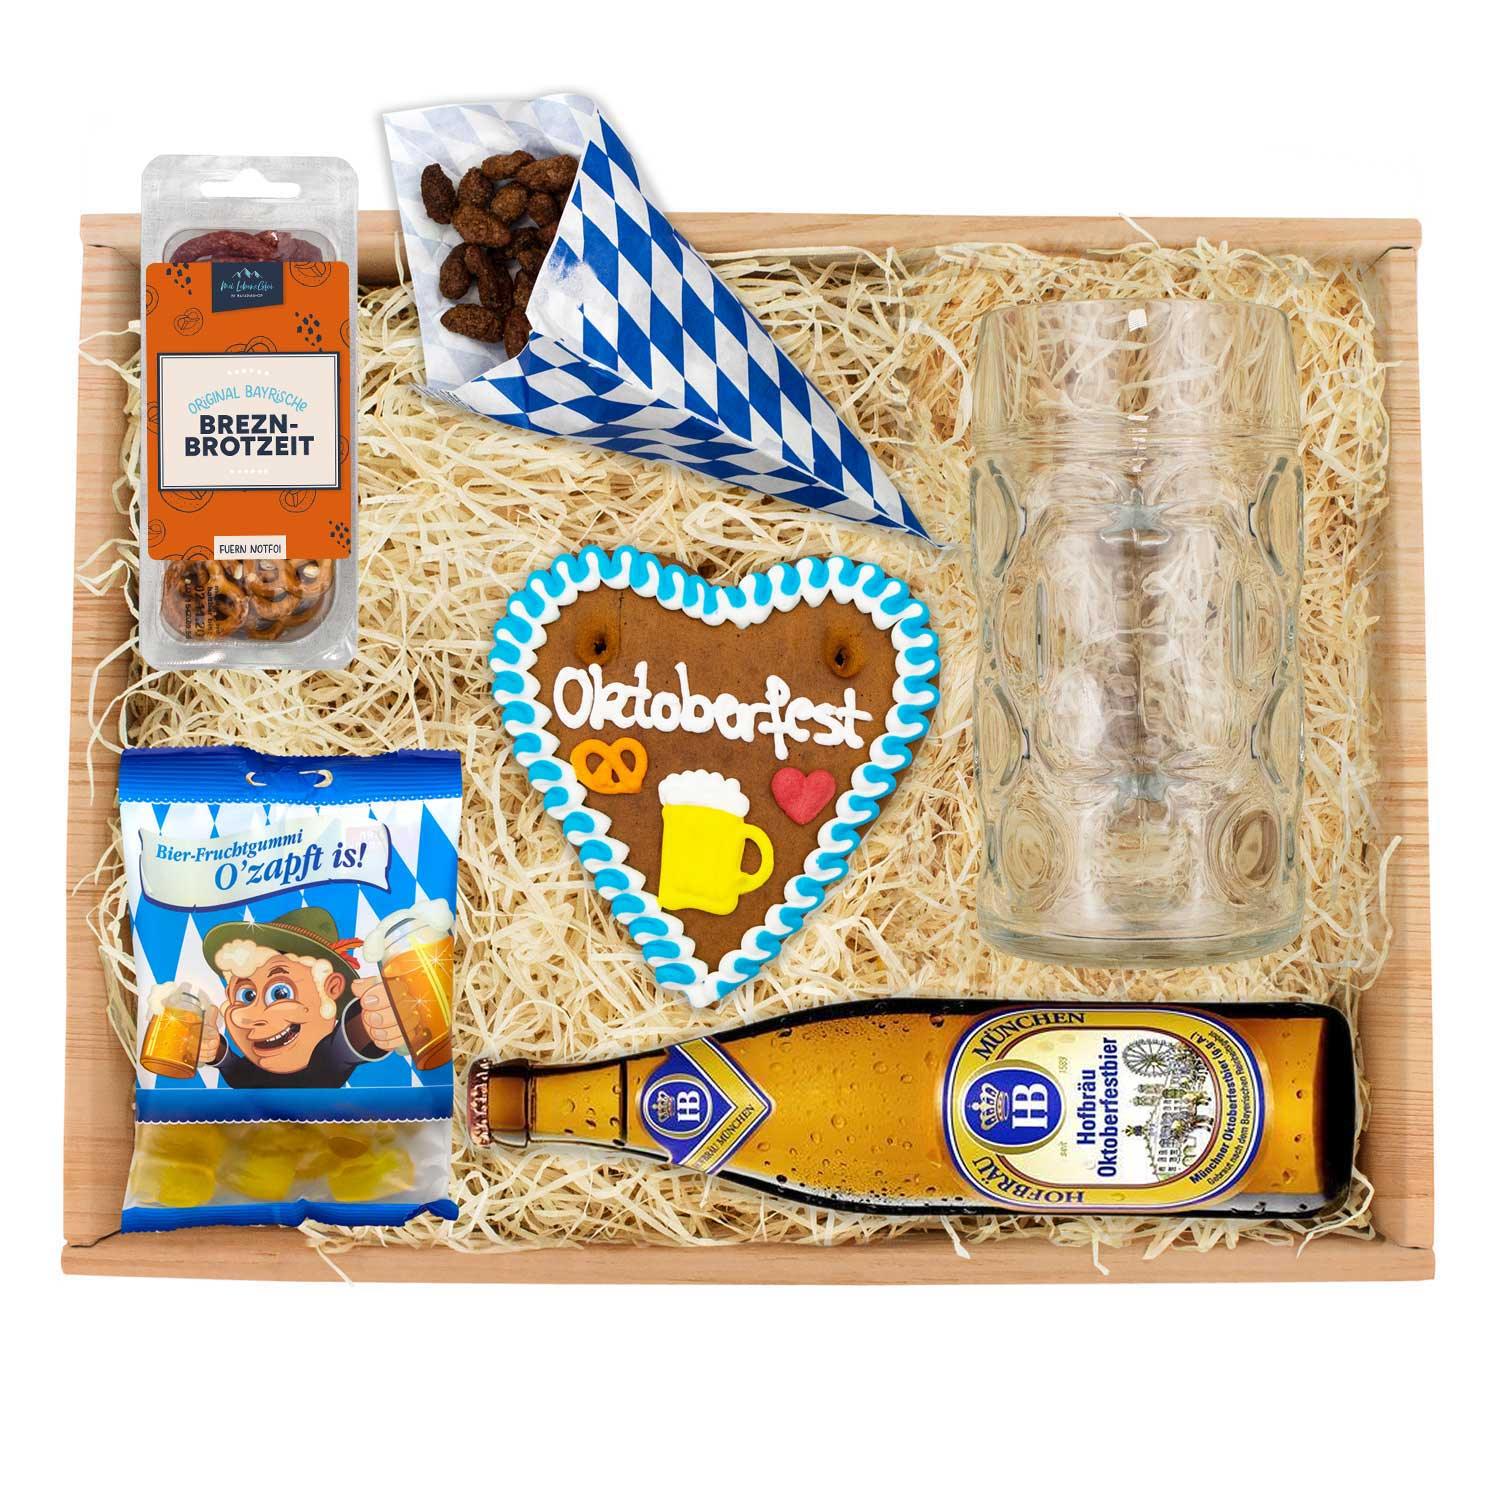 Oktoberfest-Box "Hofbräu" - bavariashop - mei LebensGfui